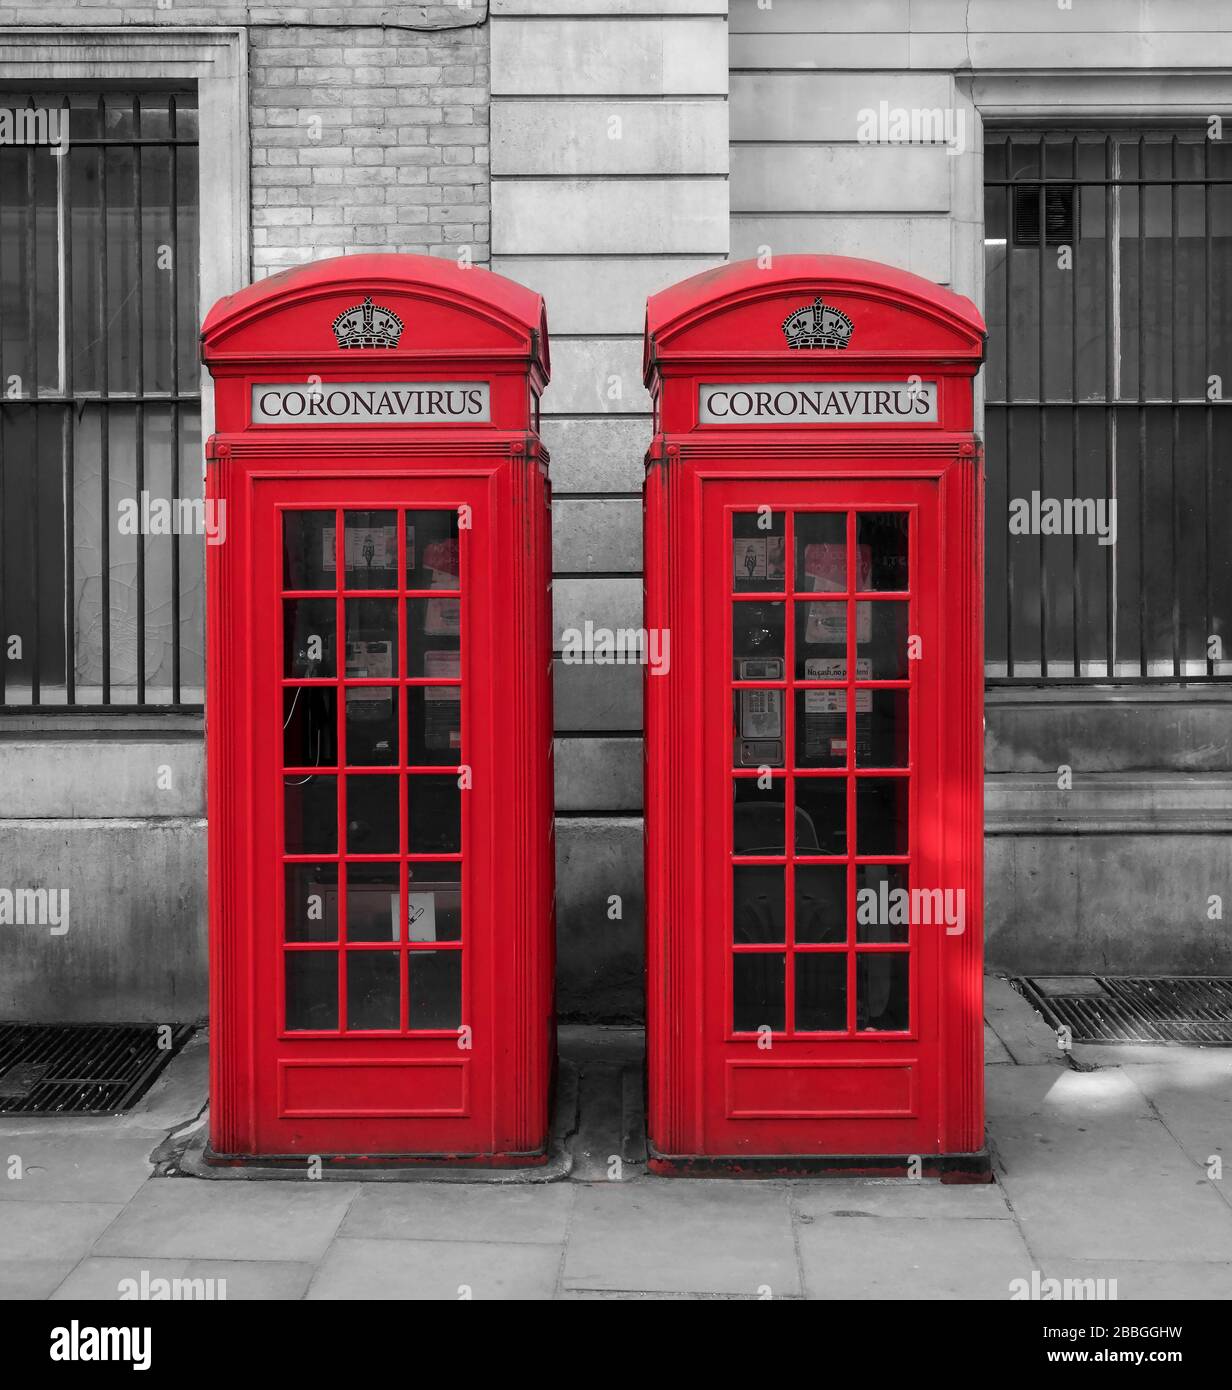 Coronavirus o Covid 19 Ilustración sobre las cajas de teléfonos rojas británicas, Londres, Inglaterra, Reino Unido Foto de stock